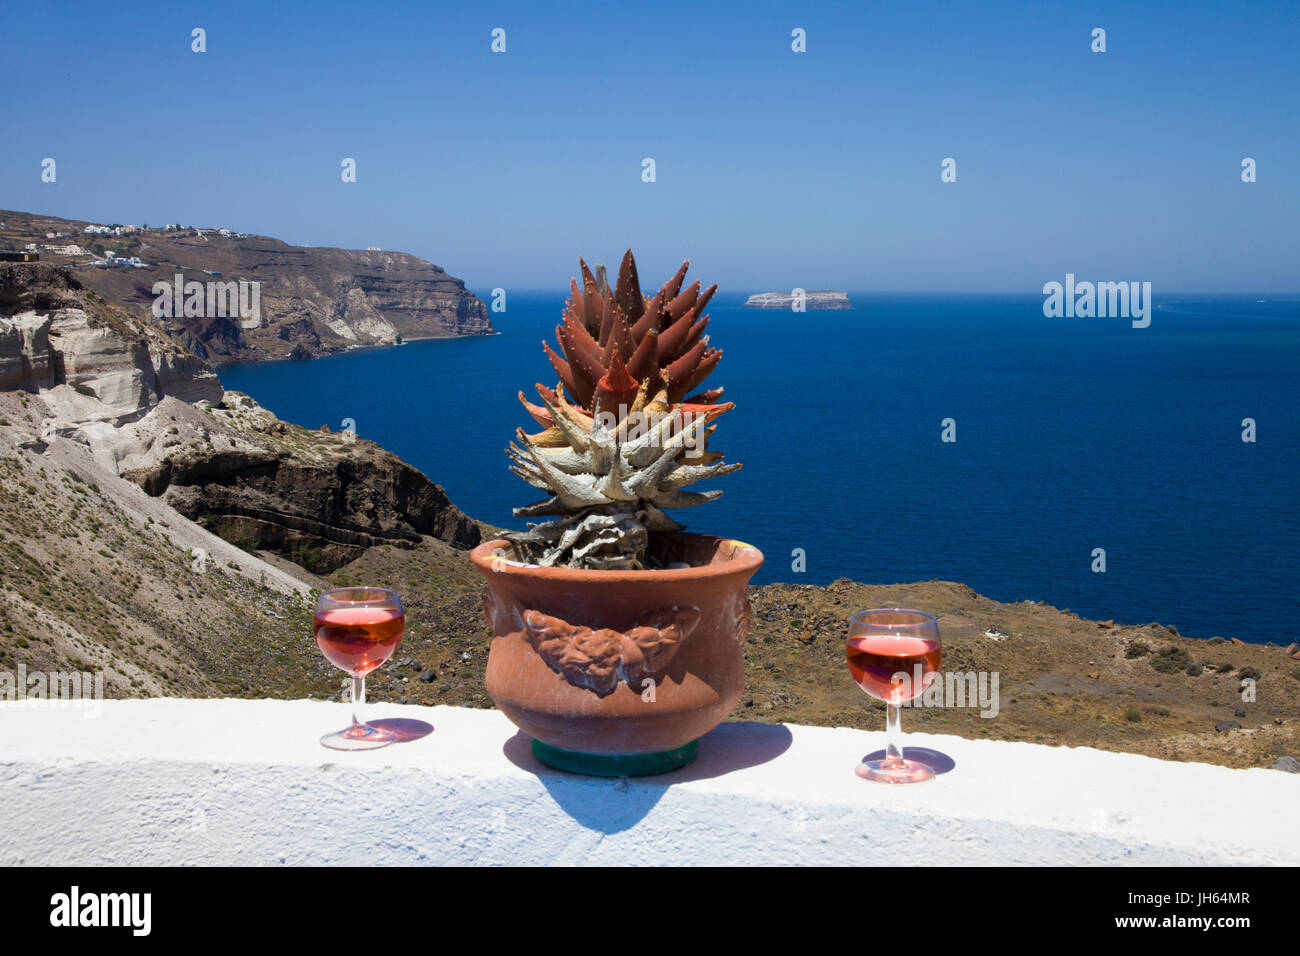 Il vinsanto wein neben kaktus, dekoration einer cocktailbar in der balos bay, im sueden von santorin, kykladen, aegaeis, griechenland, mittelmeer, europa Foto Stock